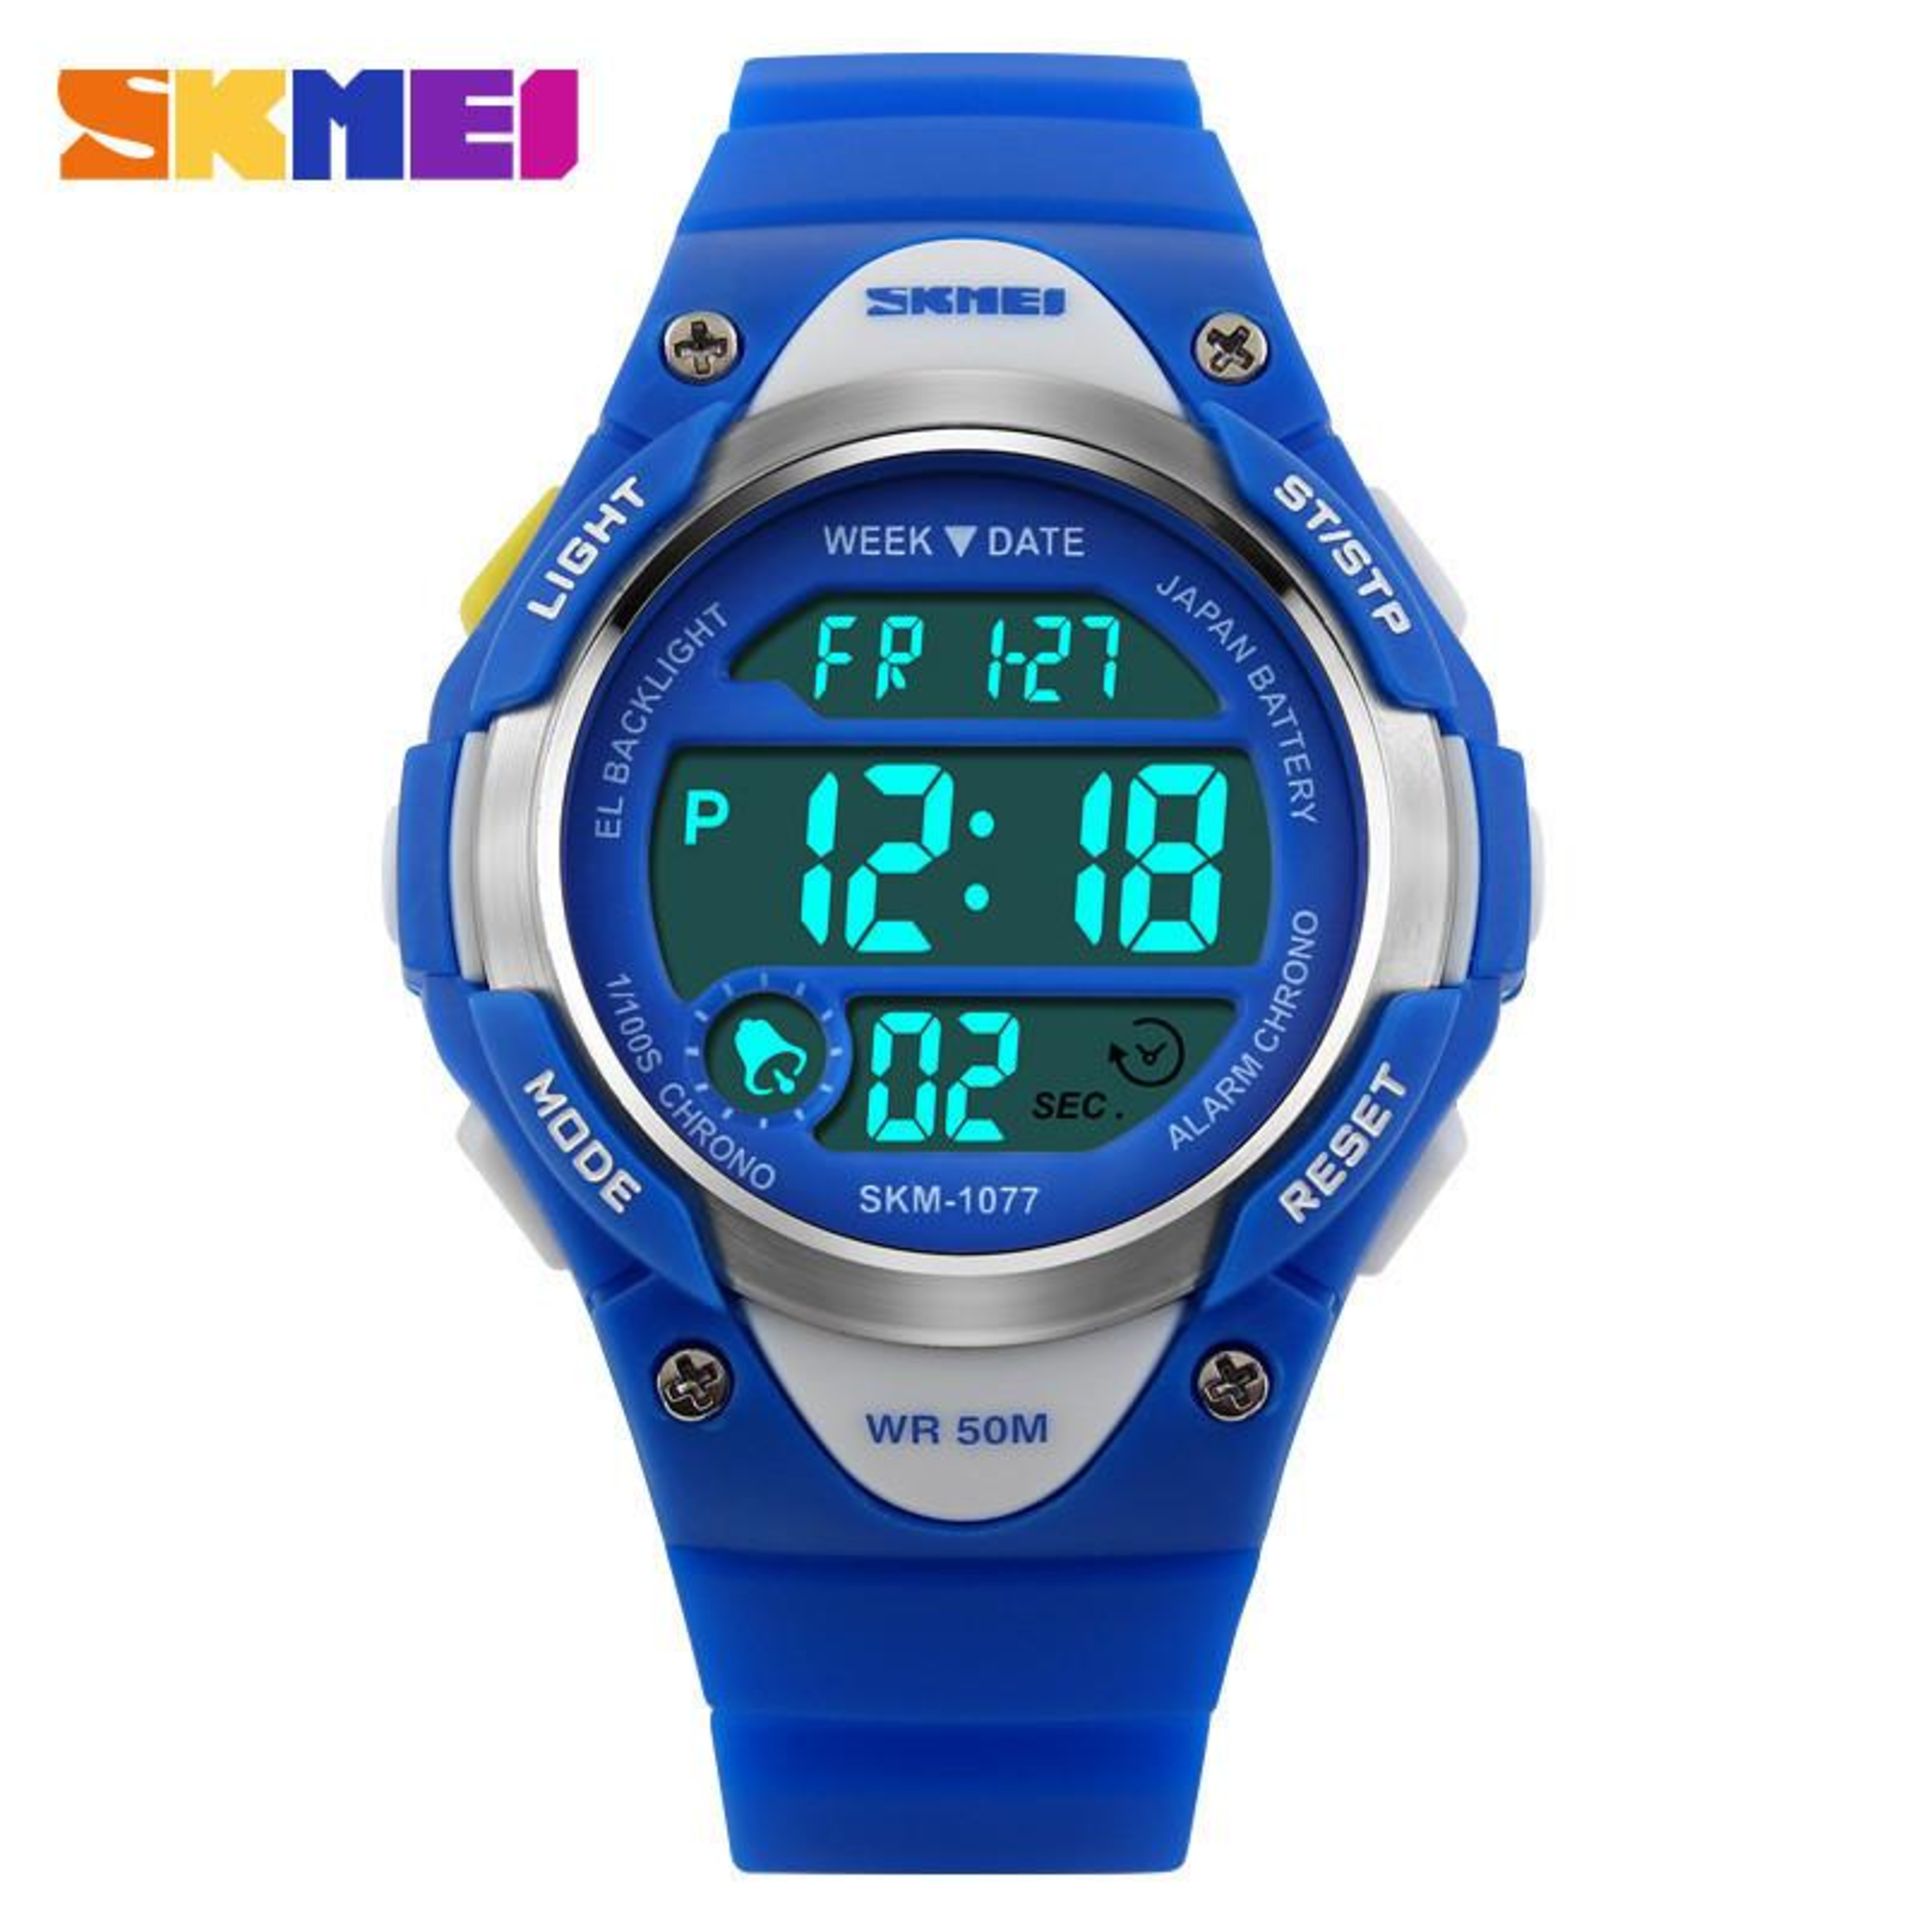 Brand new SKMEI Boys Digital Sports waterproof watch